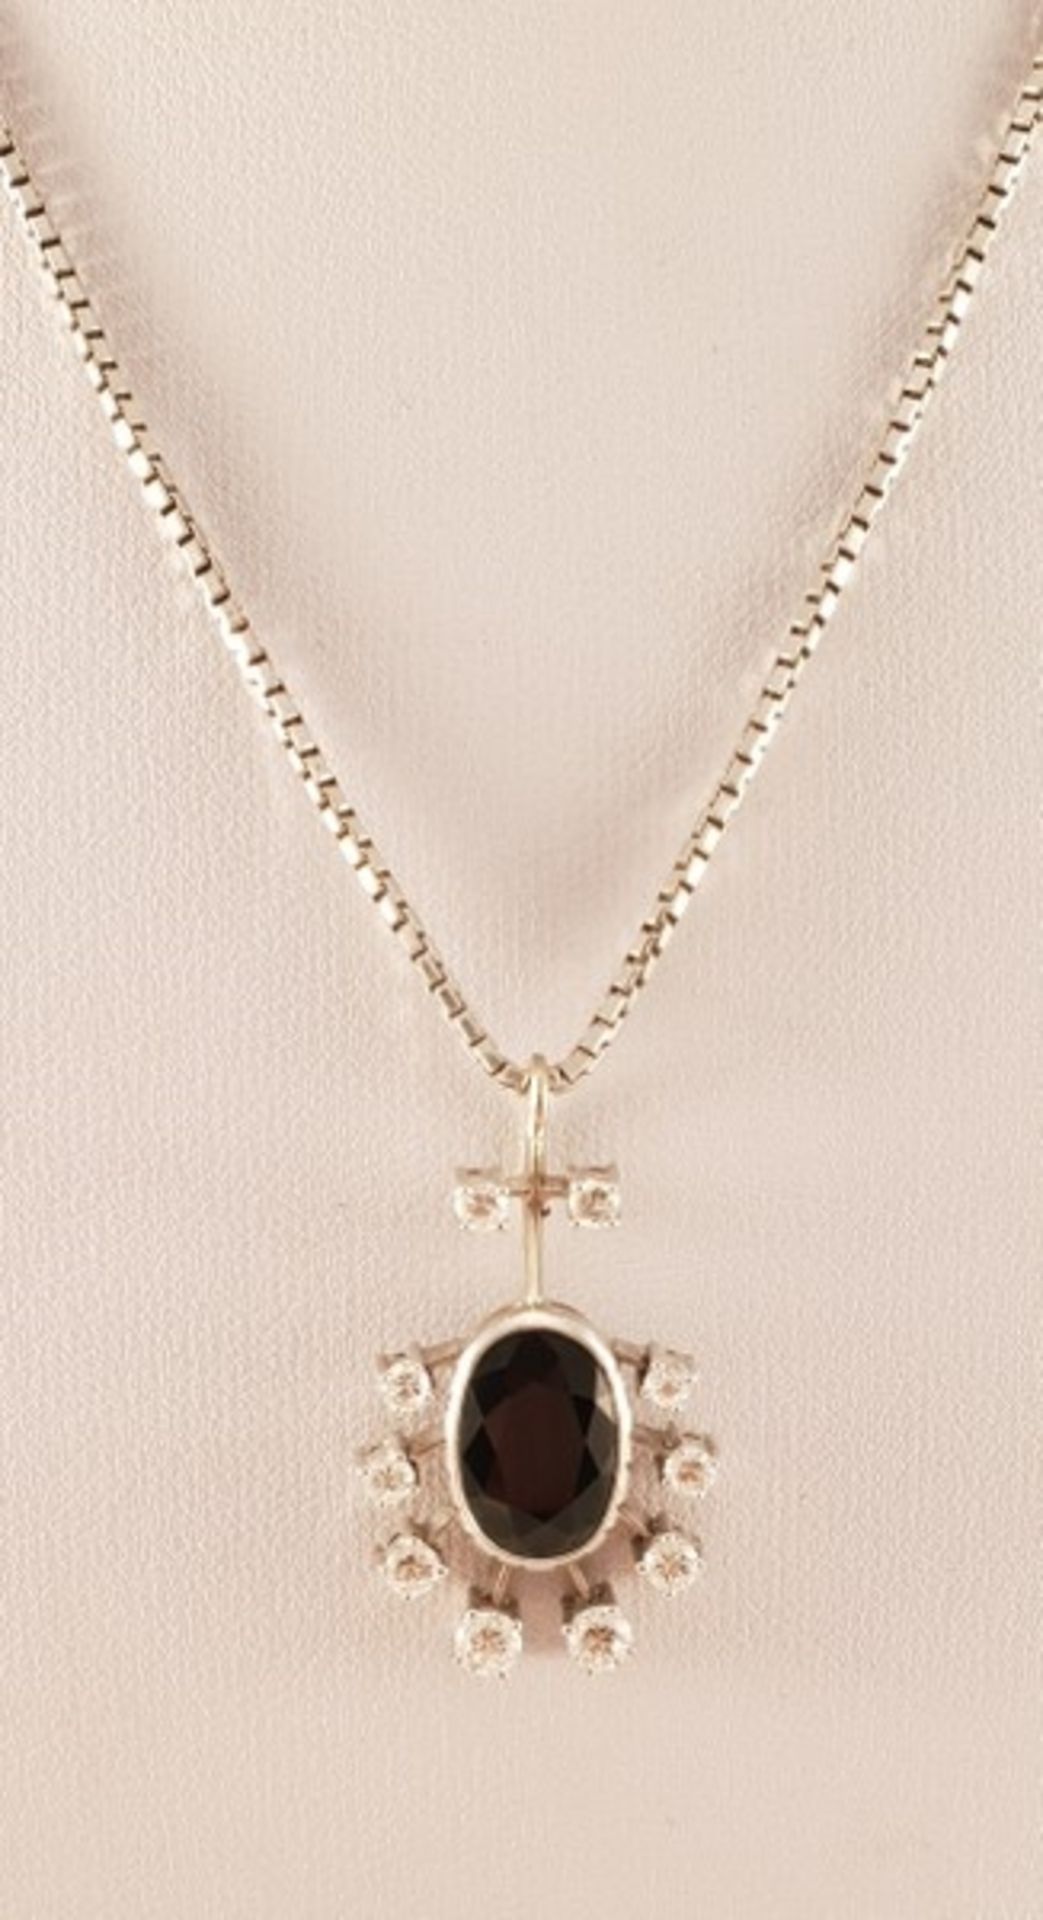 Halskette mit Diamant Saphir Anhänger, Weißgold 585, Diamanten zus.ca. 0,69ct. , Saphir ca. 1,